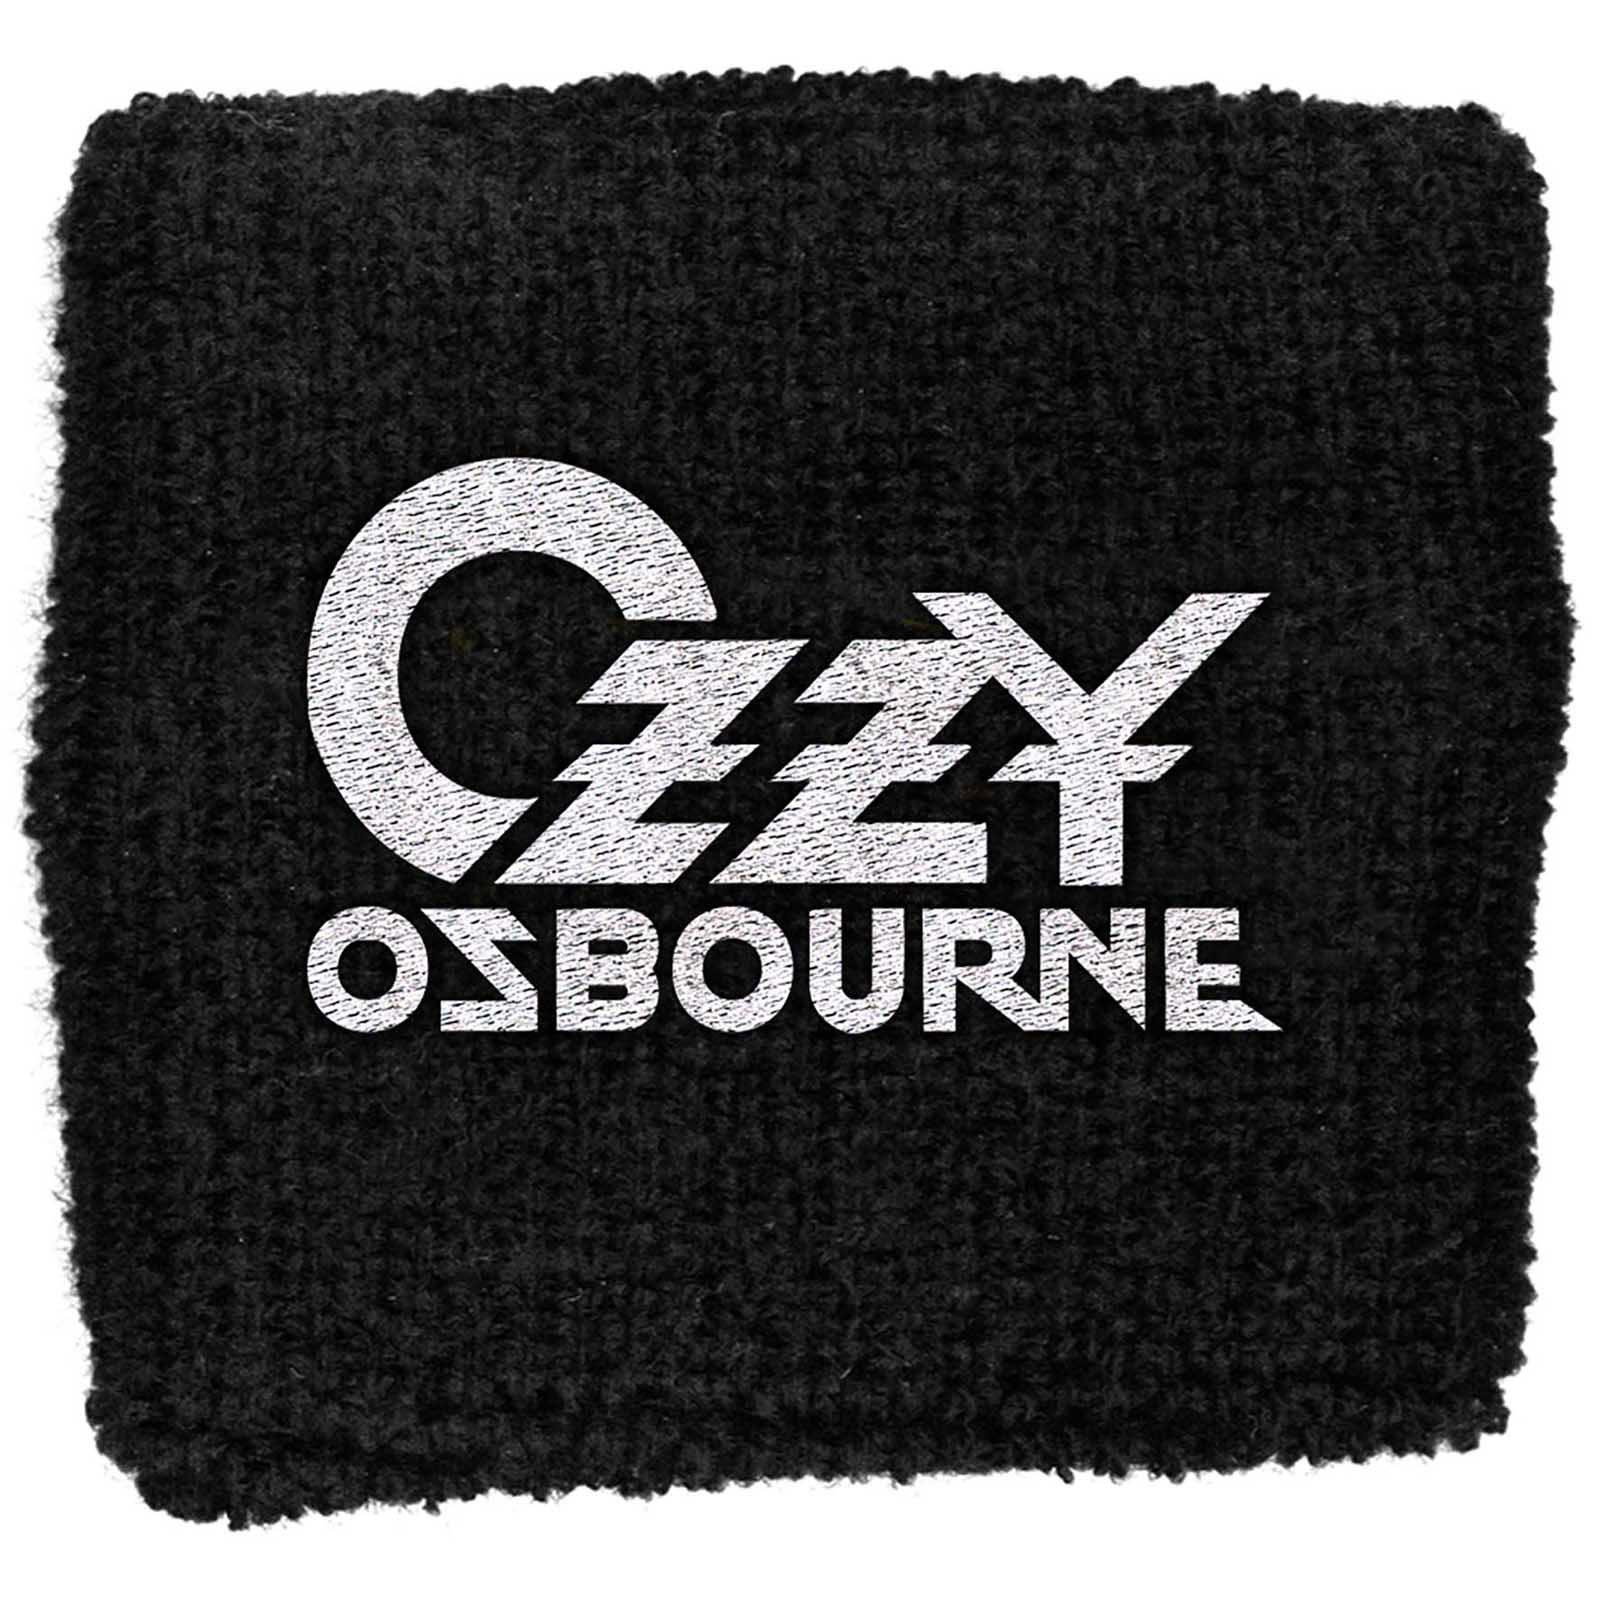 (オジー・オズボーン) Ozzy Osbourne オフィシャル商品 ロゴ リストバンド 布地 スエットバンド 【海外..